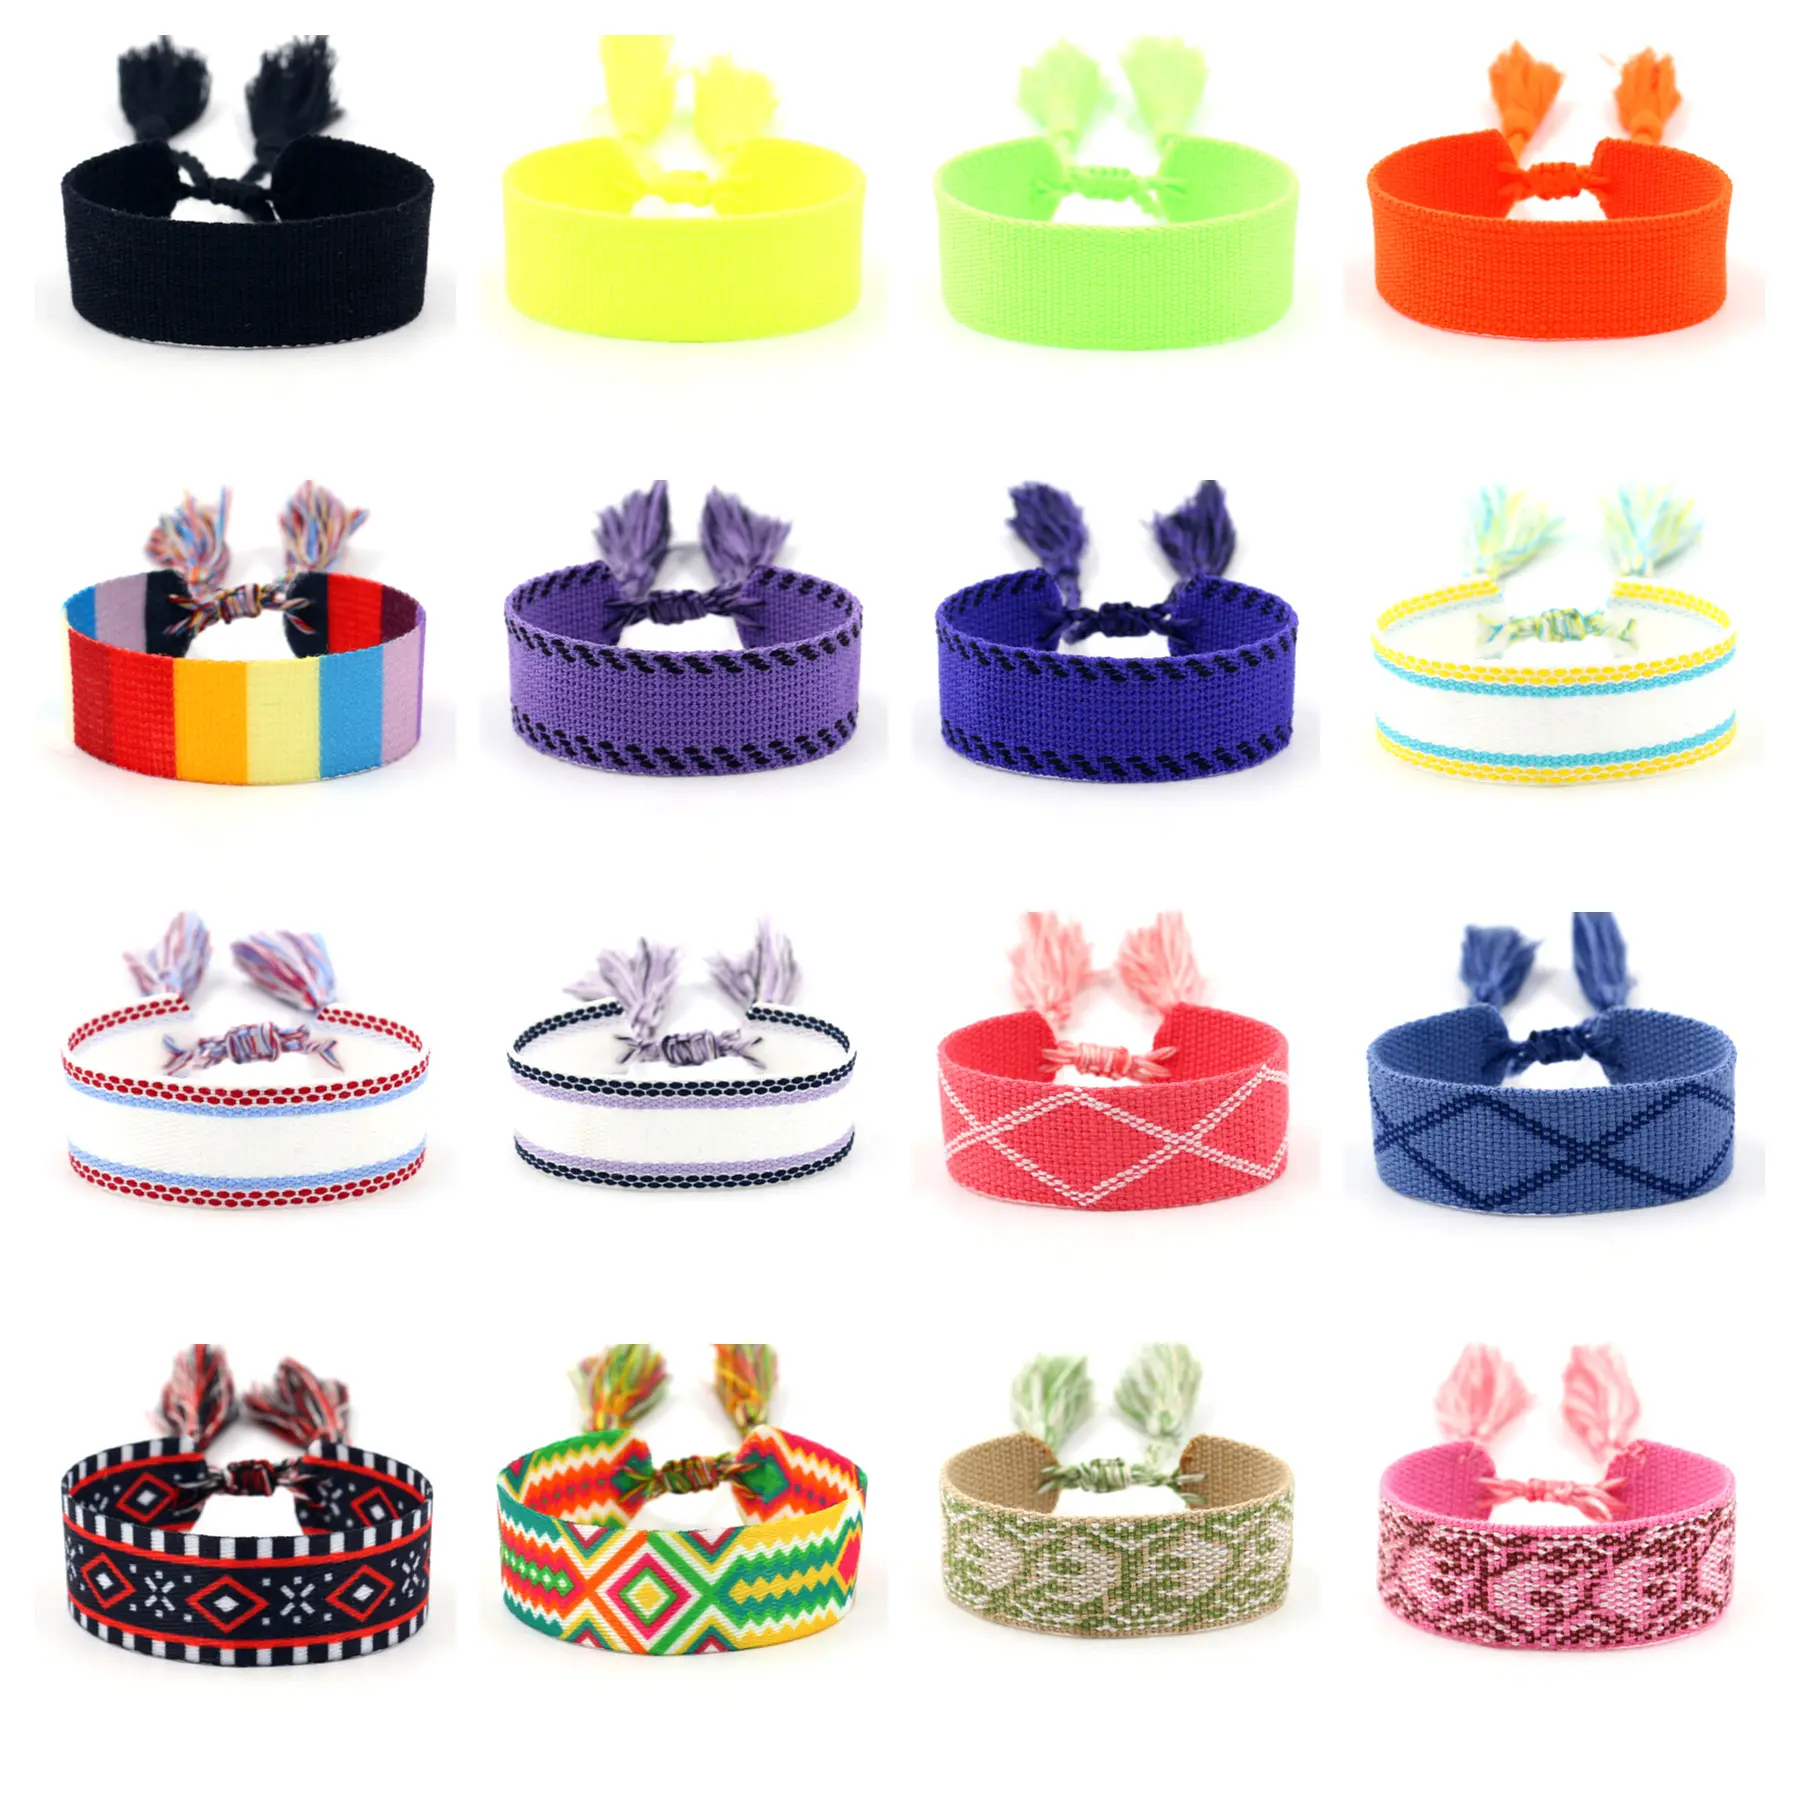 Embroidery Ethnic Friendship Woven Wrap Bracelets Knitted Custom Logo Adjustable Tassel Handmade Bracelets for women girls